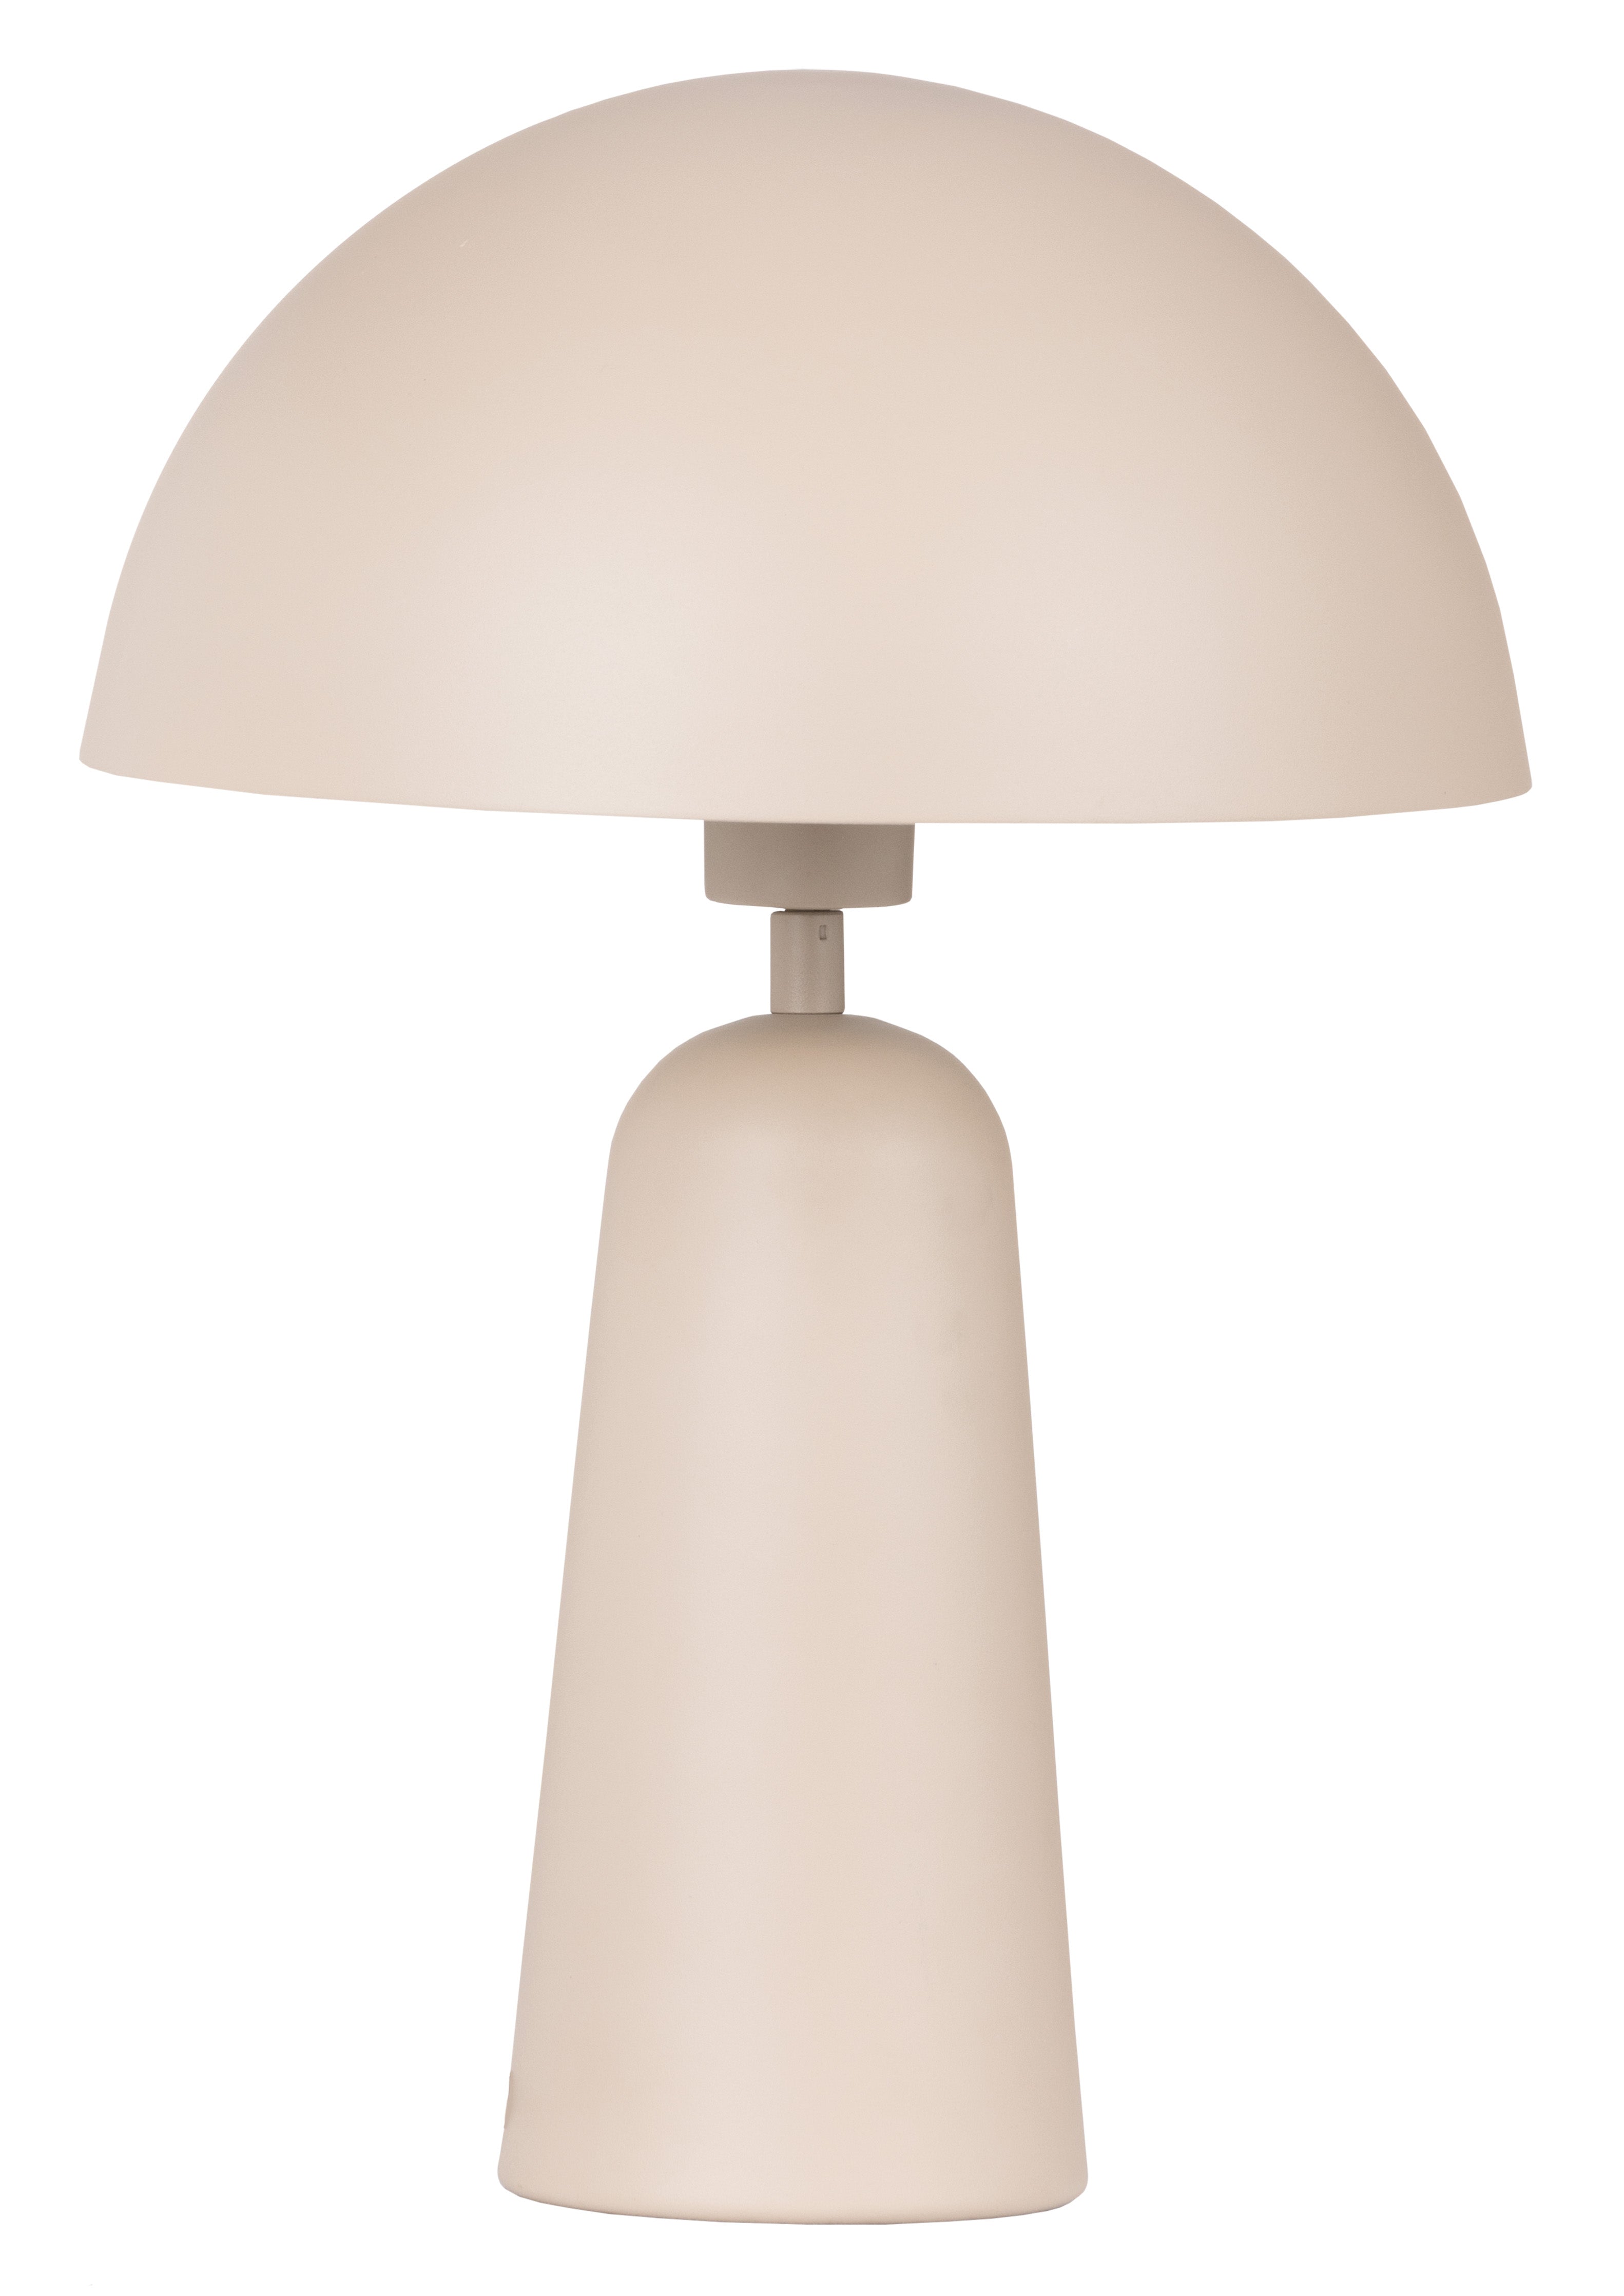 ARANZOLA Lampe sur table Beige - 206032A | EGLO